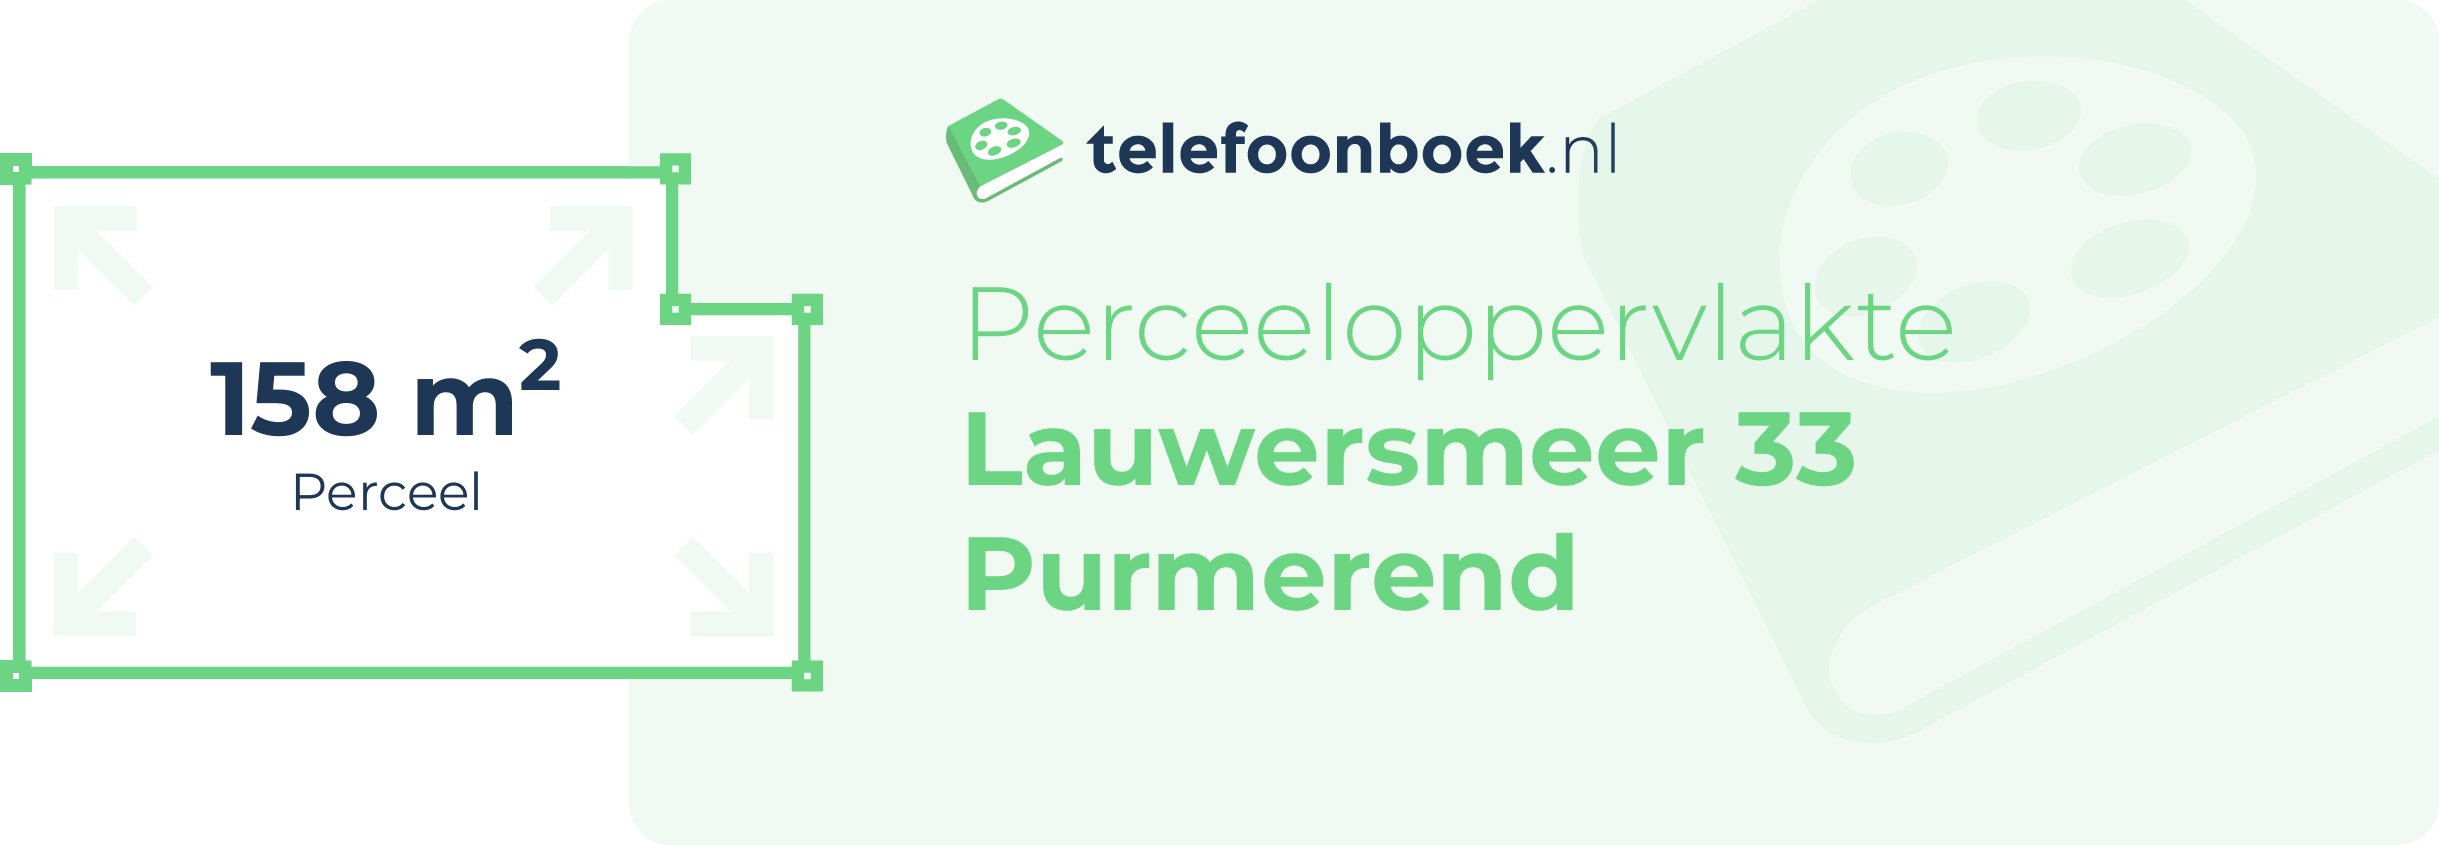 Perceeloppervlakte Lauwersmeer 33 Purmerend